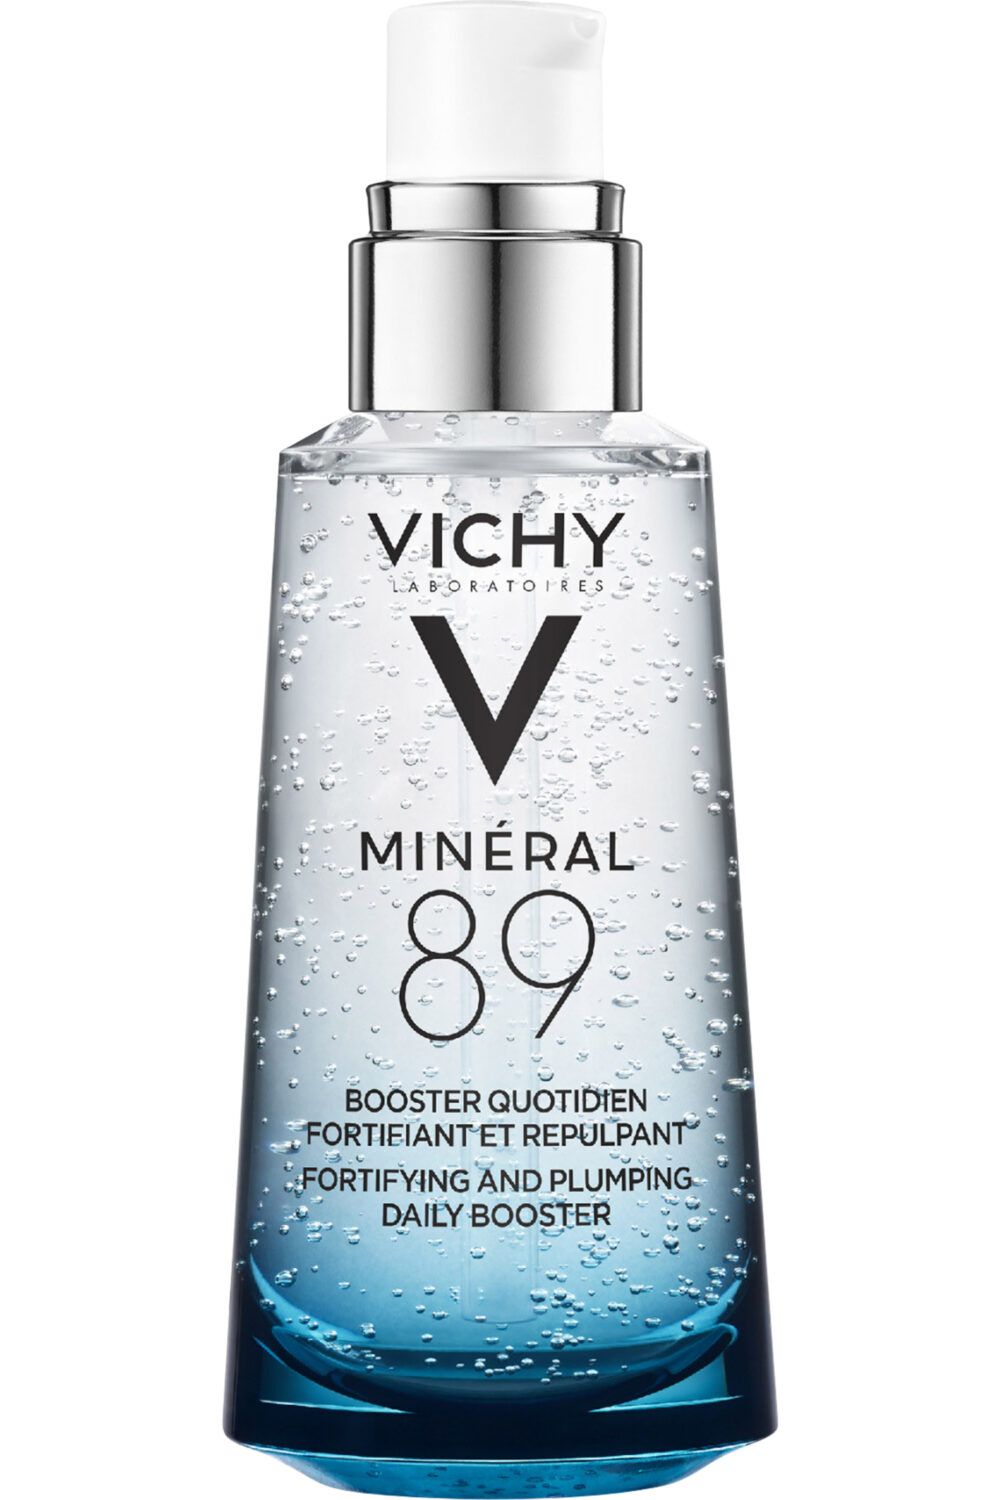 Vichy - Sérum hydratant fortifiant et repulpant à l'acide hyaluronique Mineral 89